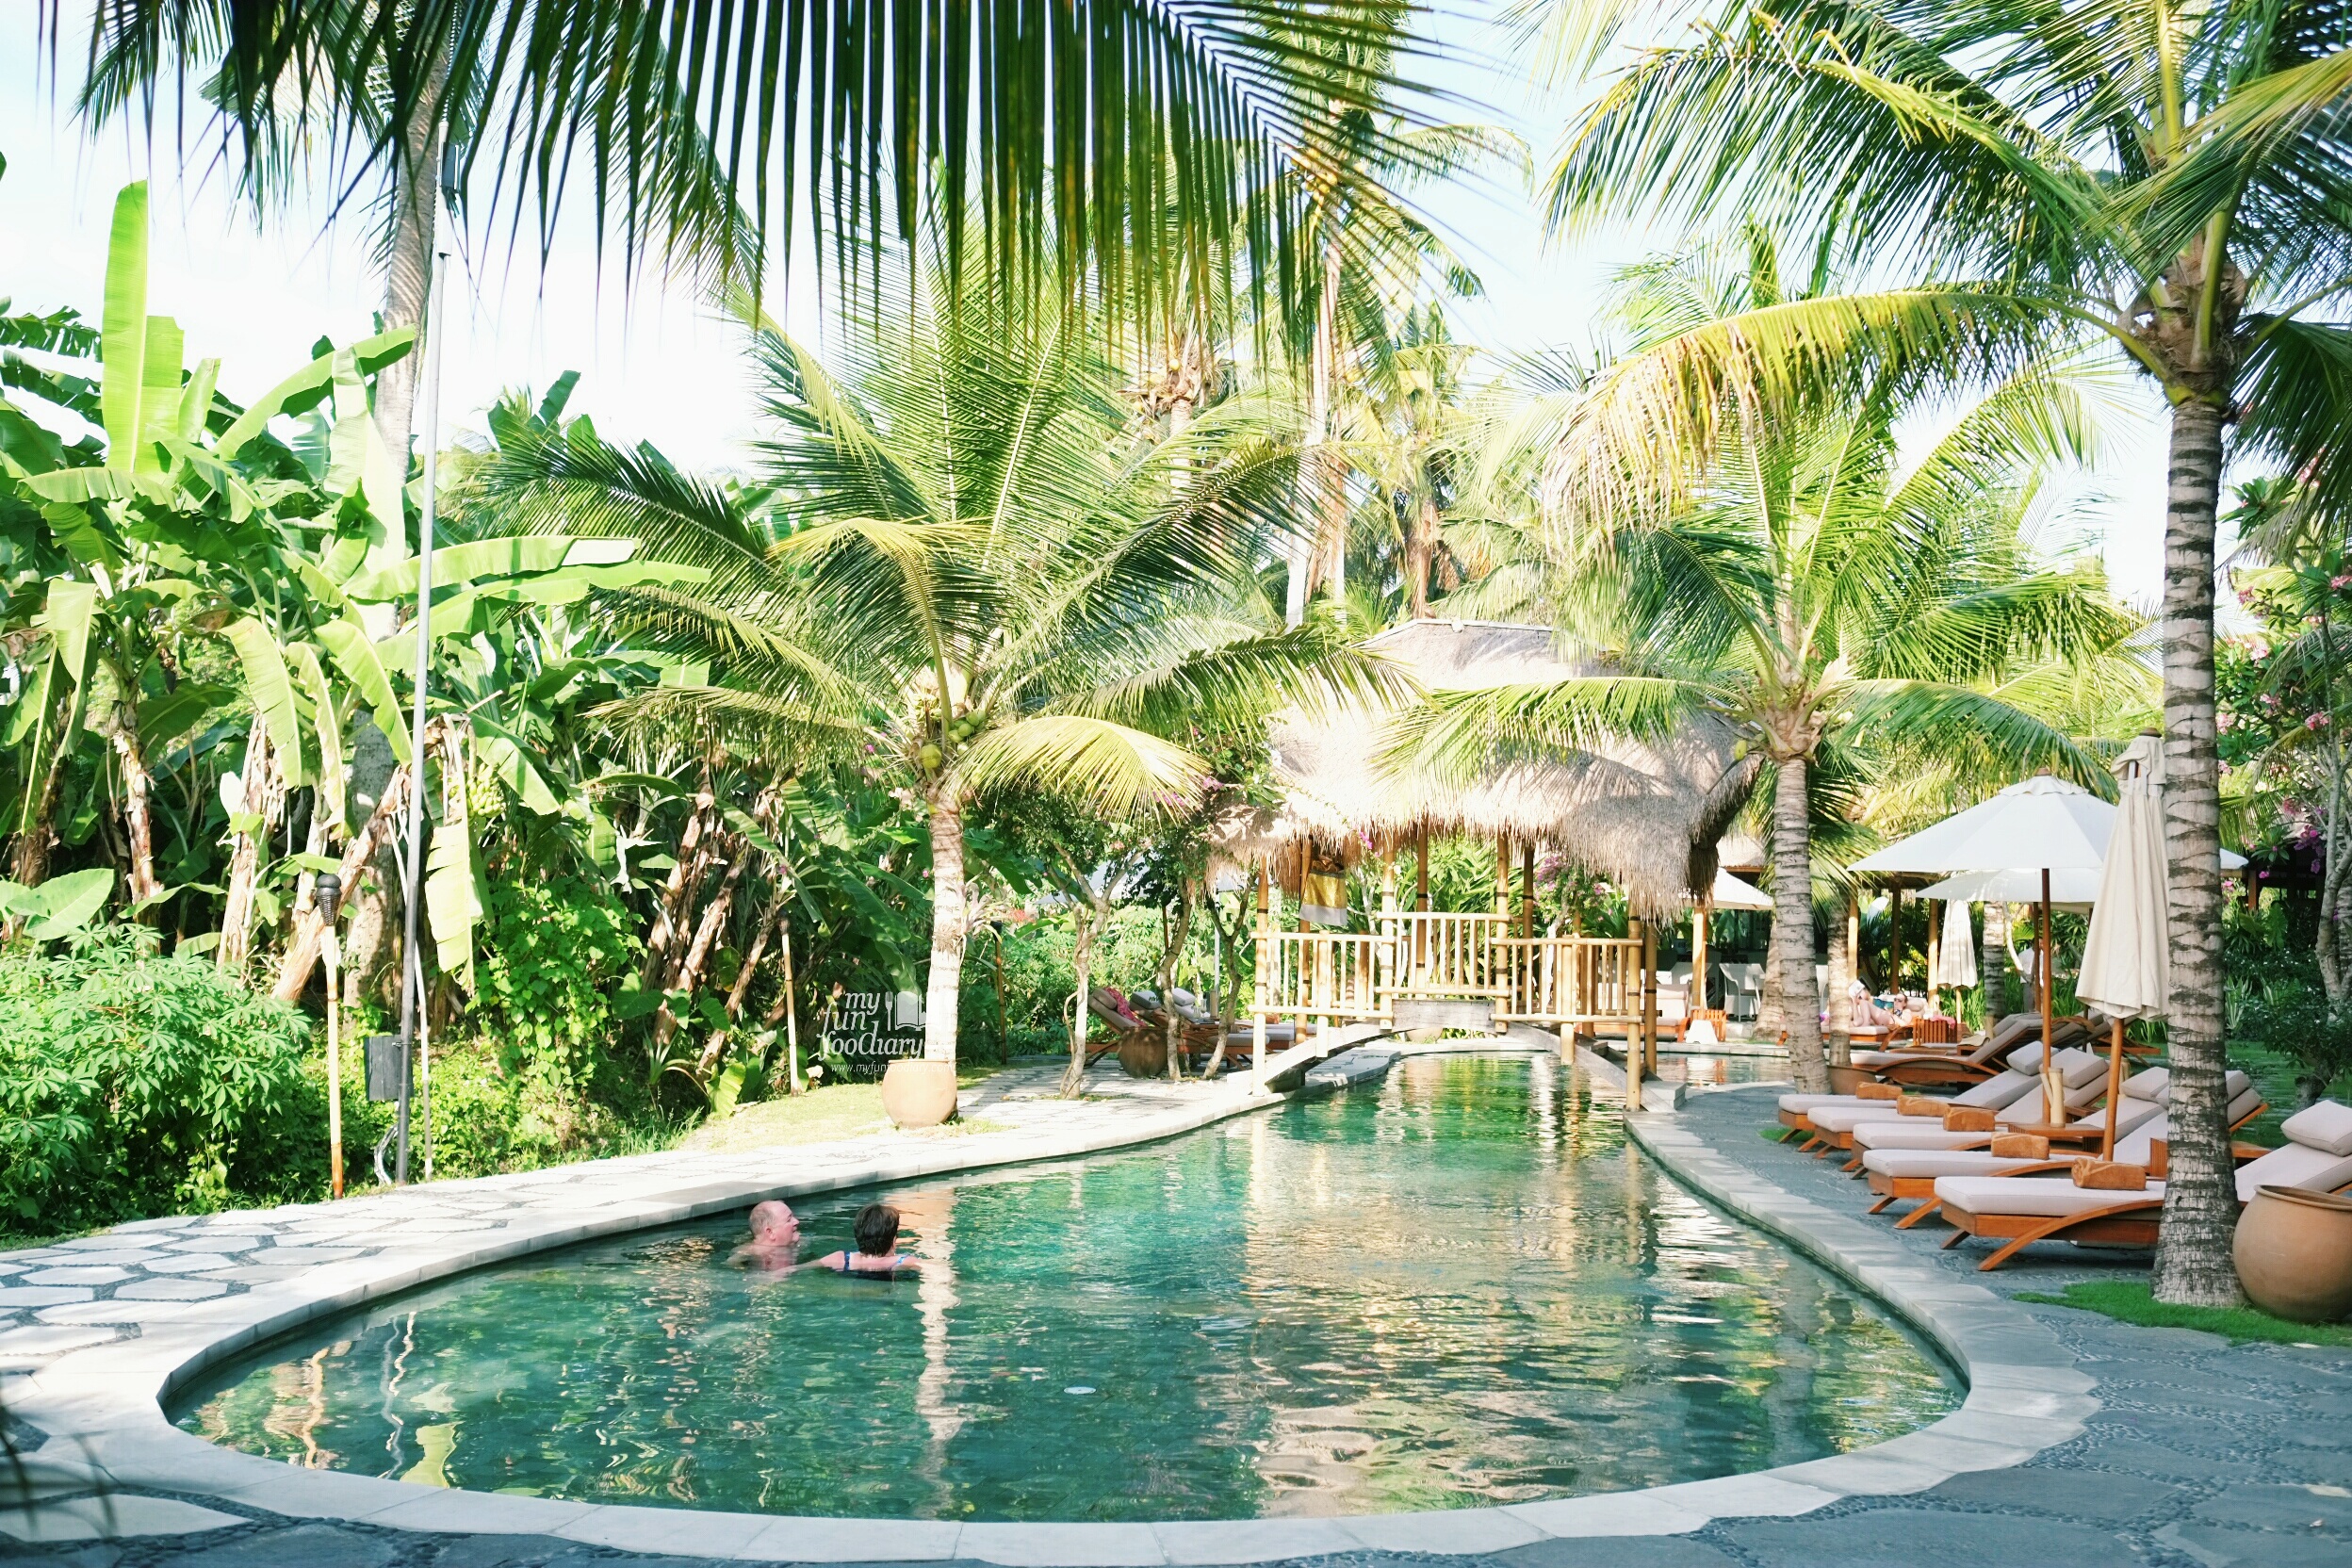 Swimming Pool at Alaya Resort Ubud, by Myfunfoodiary